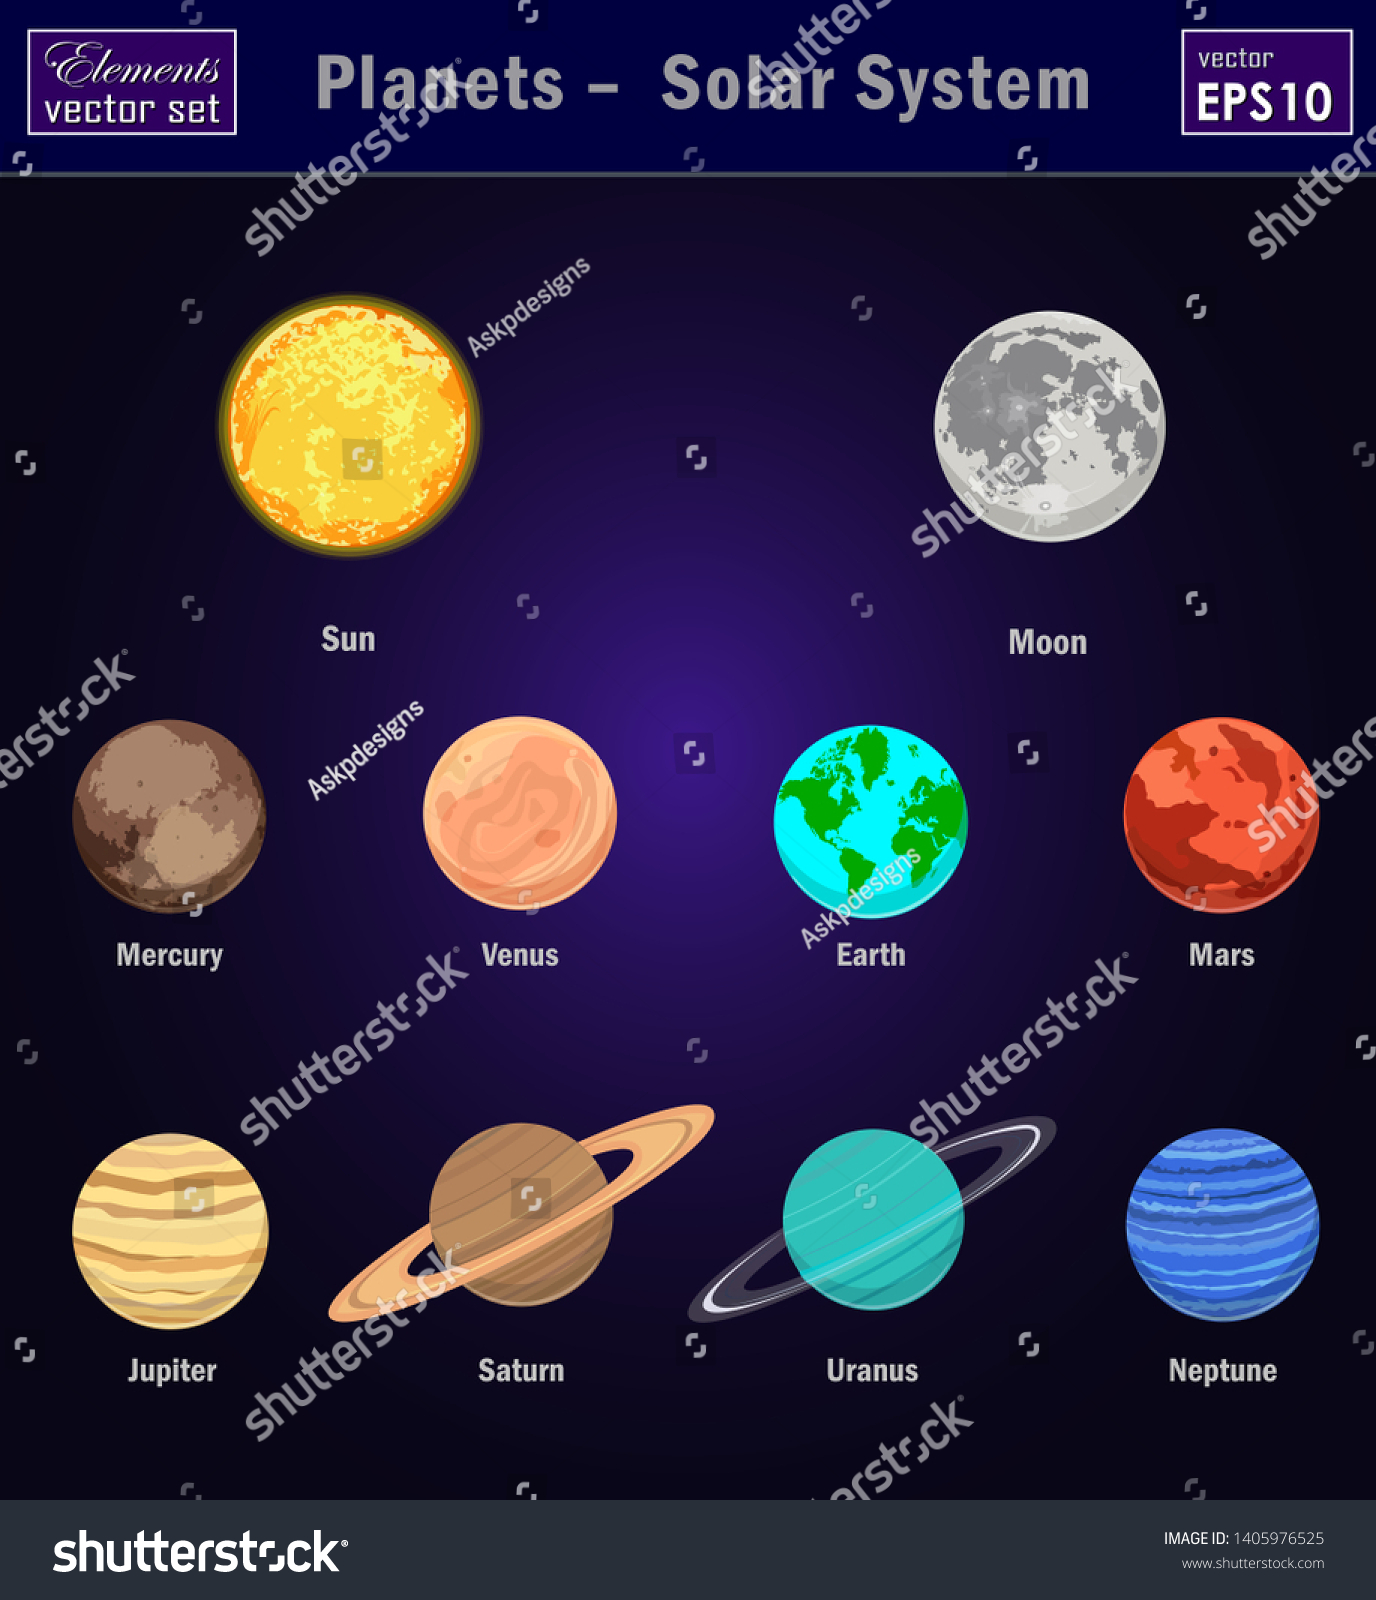 「ベクターイラスト。太陽系の惑星、彗星、月。太陽、水星、金星 